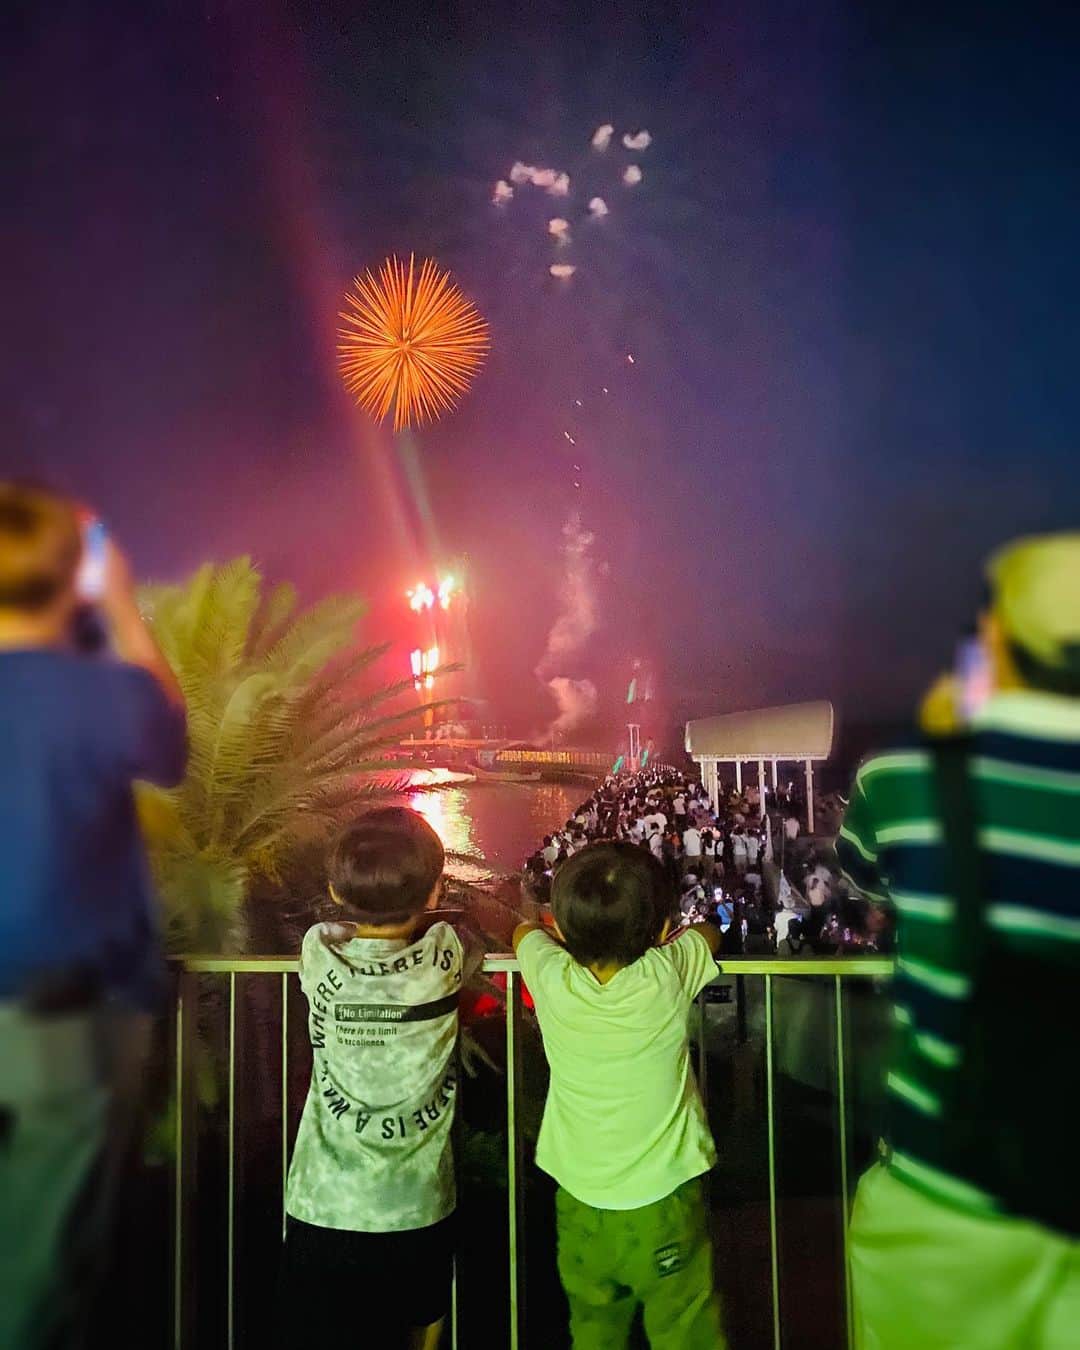 蒲生麻由のインスタグラム：「息子達にとって、 初めて間近に観る花火大会🎇  『花火ってこんなにうるさいんだね』  が第一声www  でも、大迫力の花火に大満足した様です^_^  #花火大会  #初めての花火大会 #男の子兄弟 #6歳と4歳  #夏休みの思い出  #夏の風景 #summer #fireworks #enoshima  #母ちゃんそろそろ疲れたぞ  #早く学校始まって」